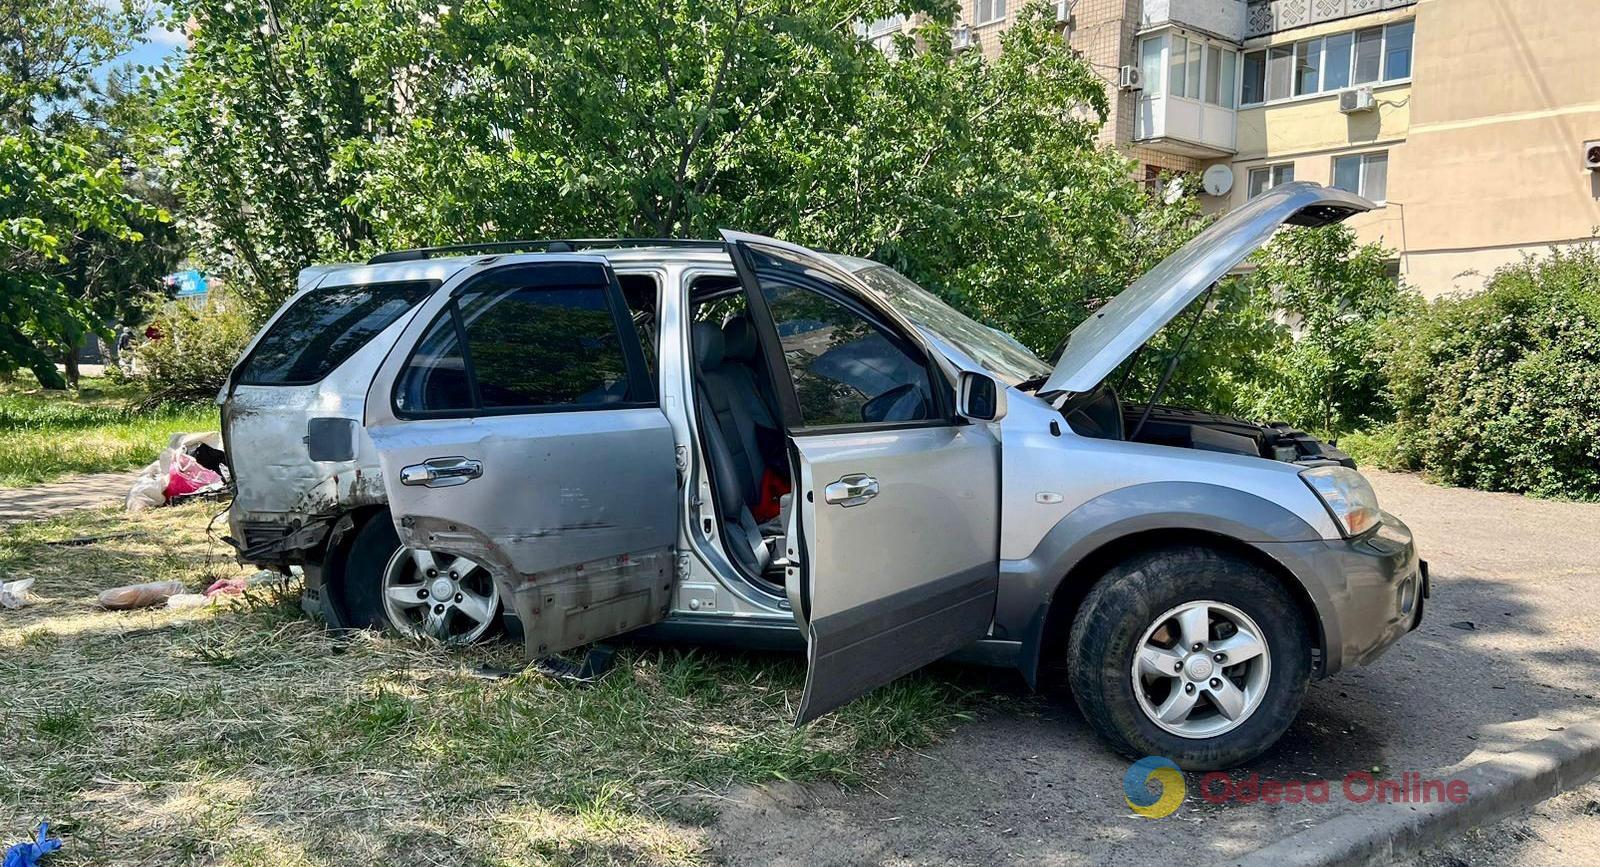 Одеса: у ДТП на Миколаївській дорозі загинули двоє людей